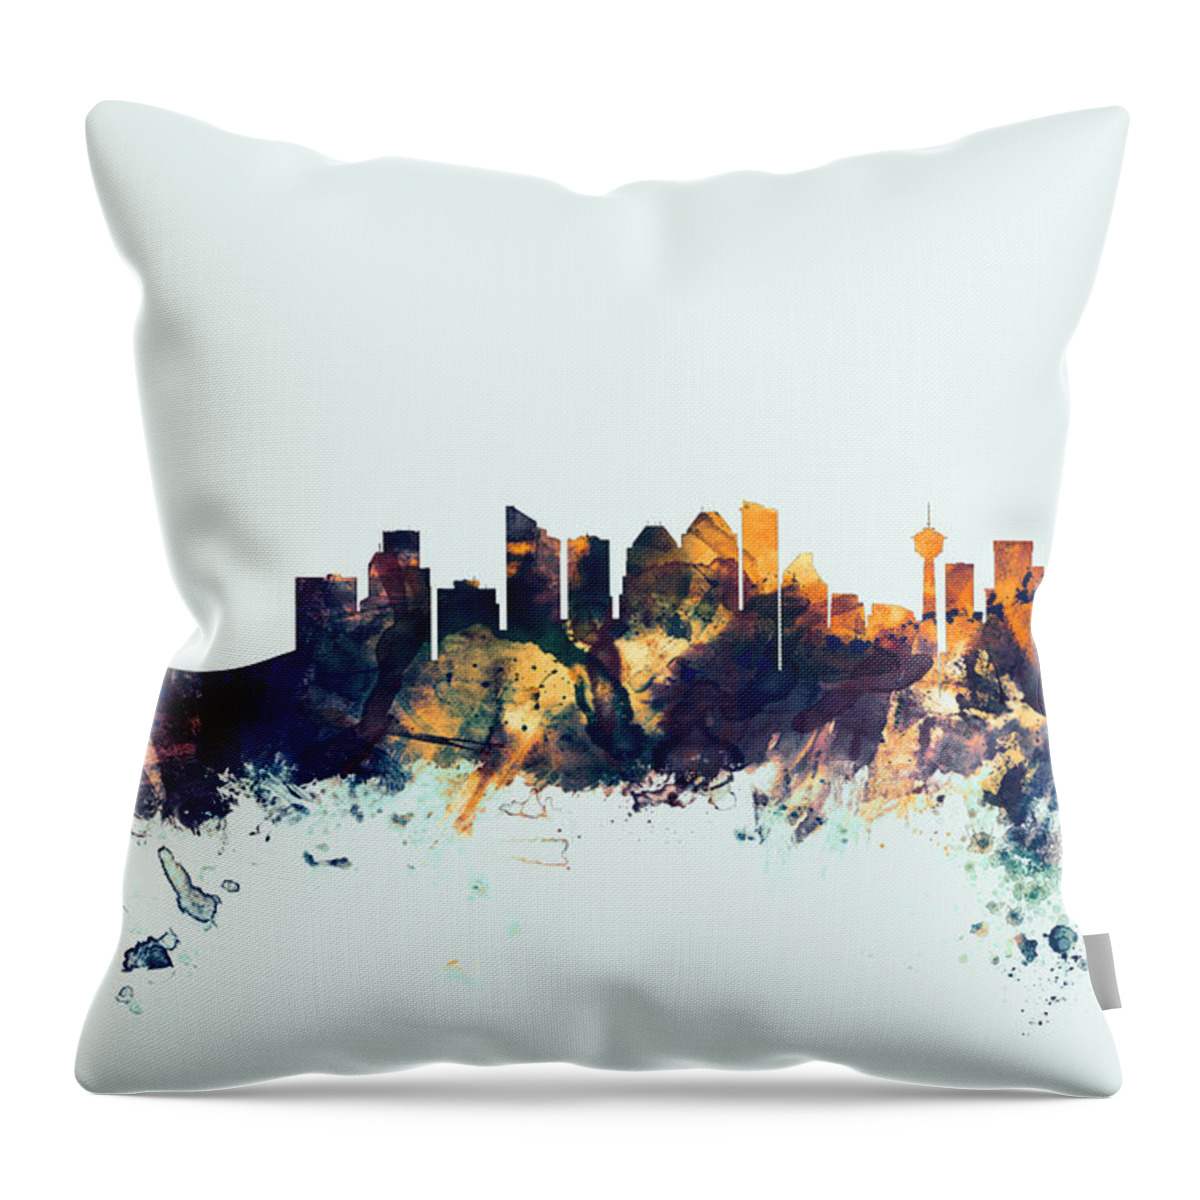 City Skyline Throw Pillow featuring the digital art Calgary Canada Skyline by Michael Tompsett